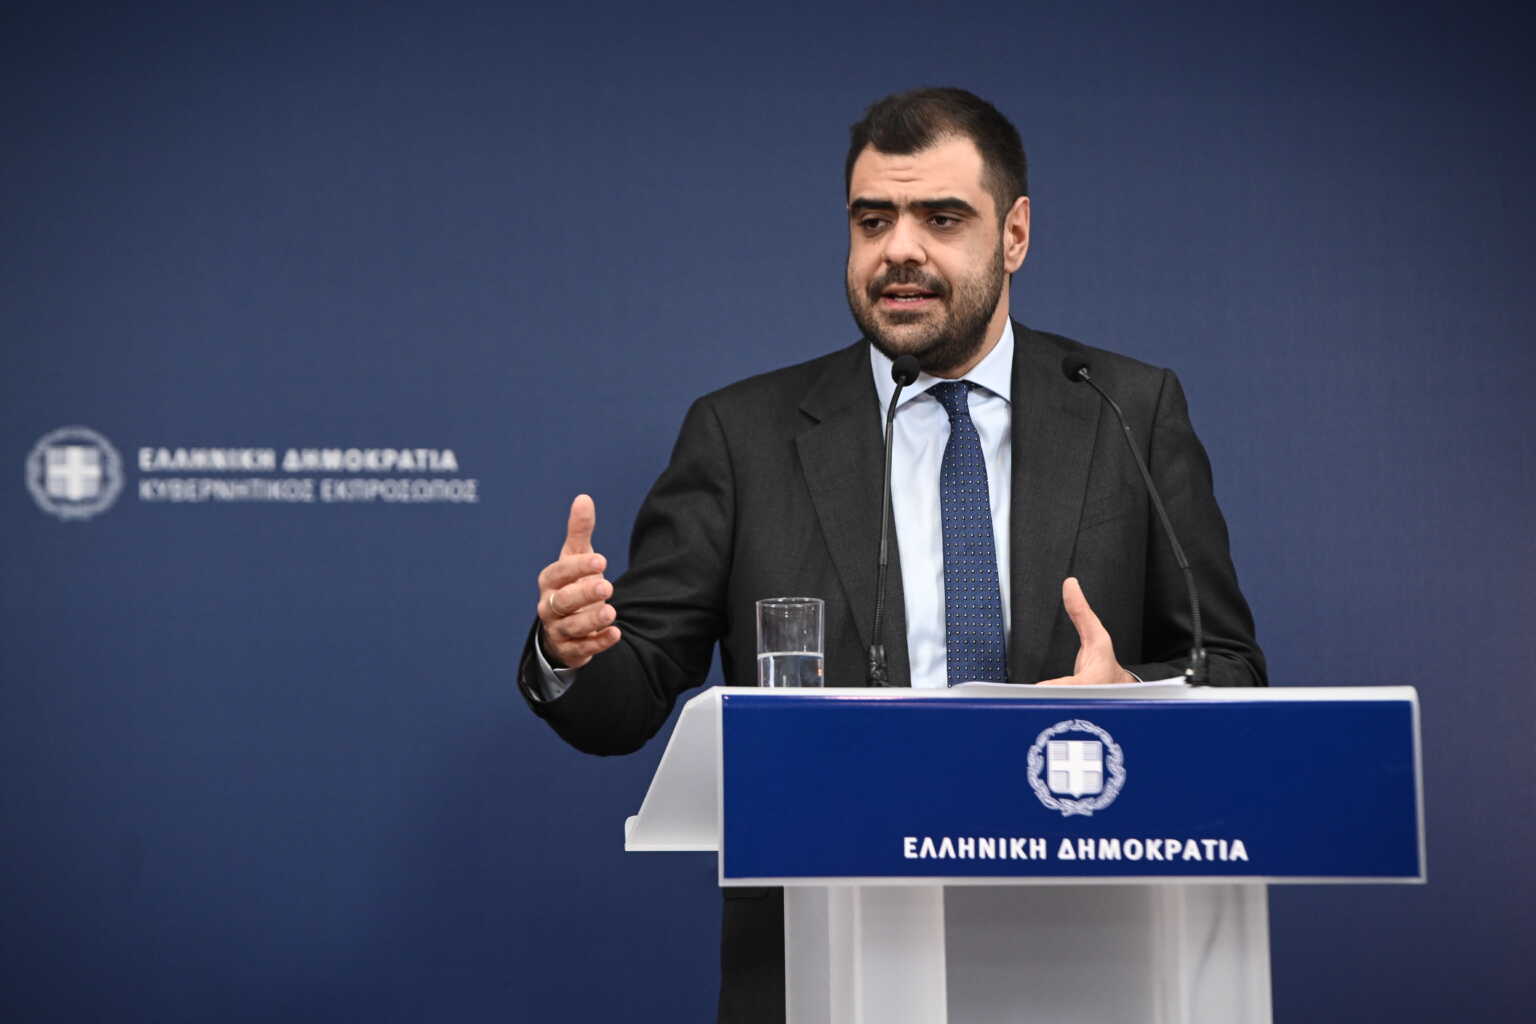 Παύλος Μαρινάκης: Επιβεβαίωσε ότι 2 υπουργοί ήπιαν ποτά στο σπίτι του Βαγγέλη Μαρινάκη – Την πίπα της ειρήνης δεν την κάπνισαν